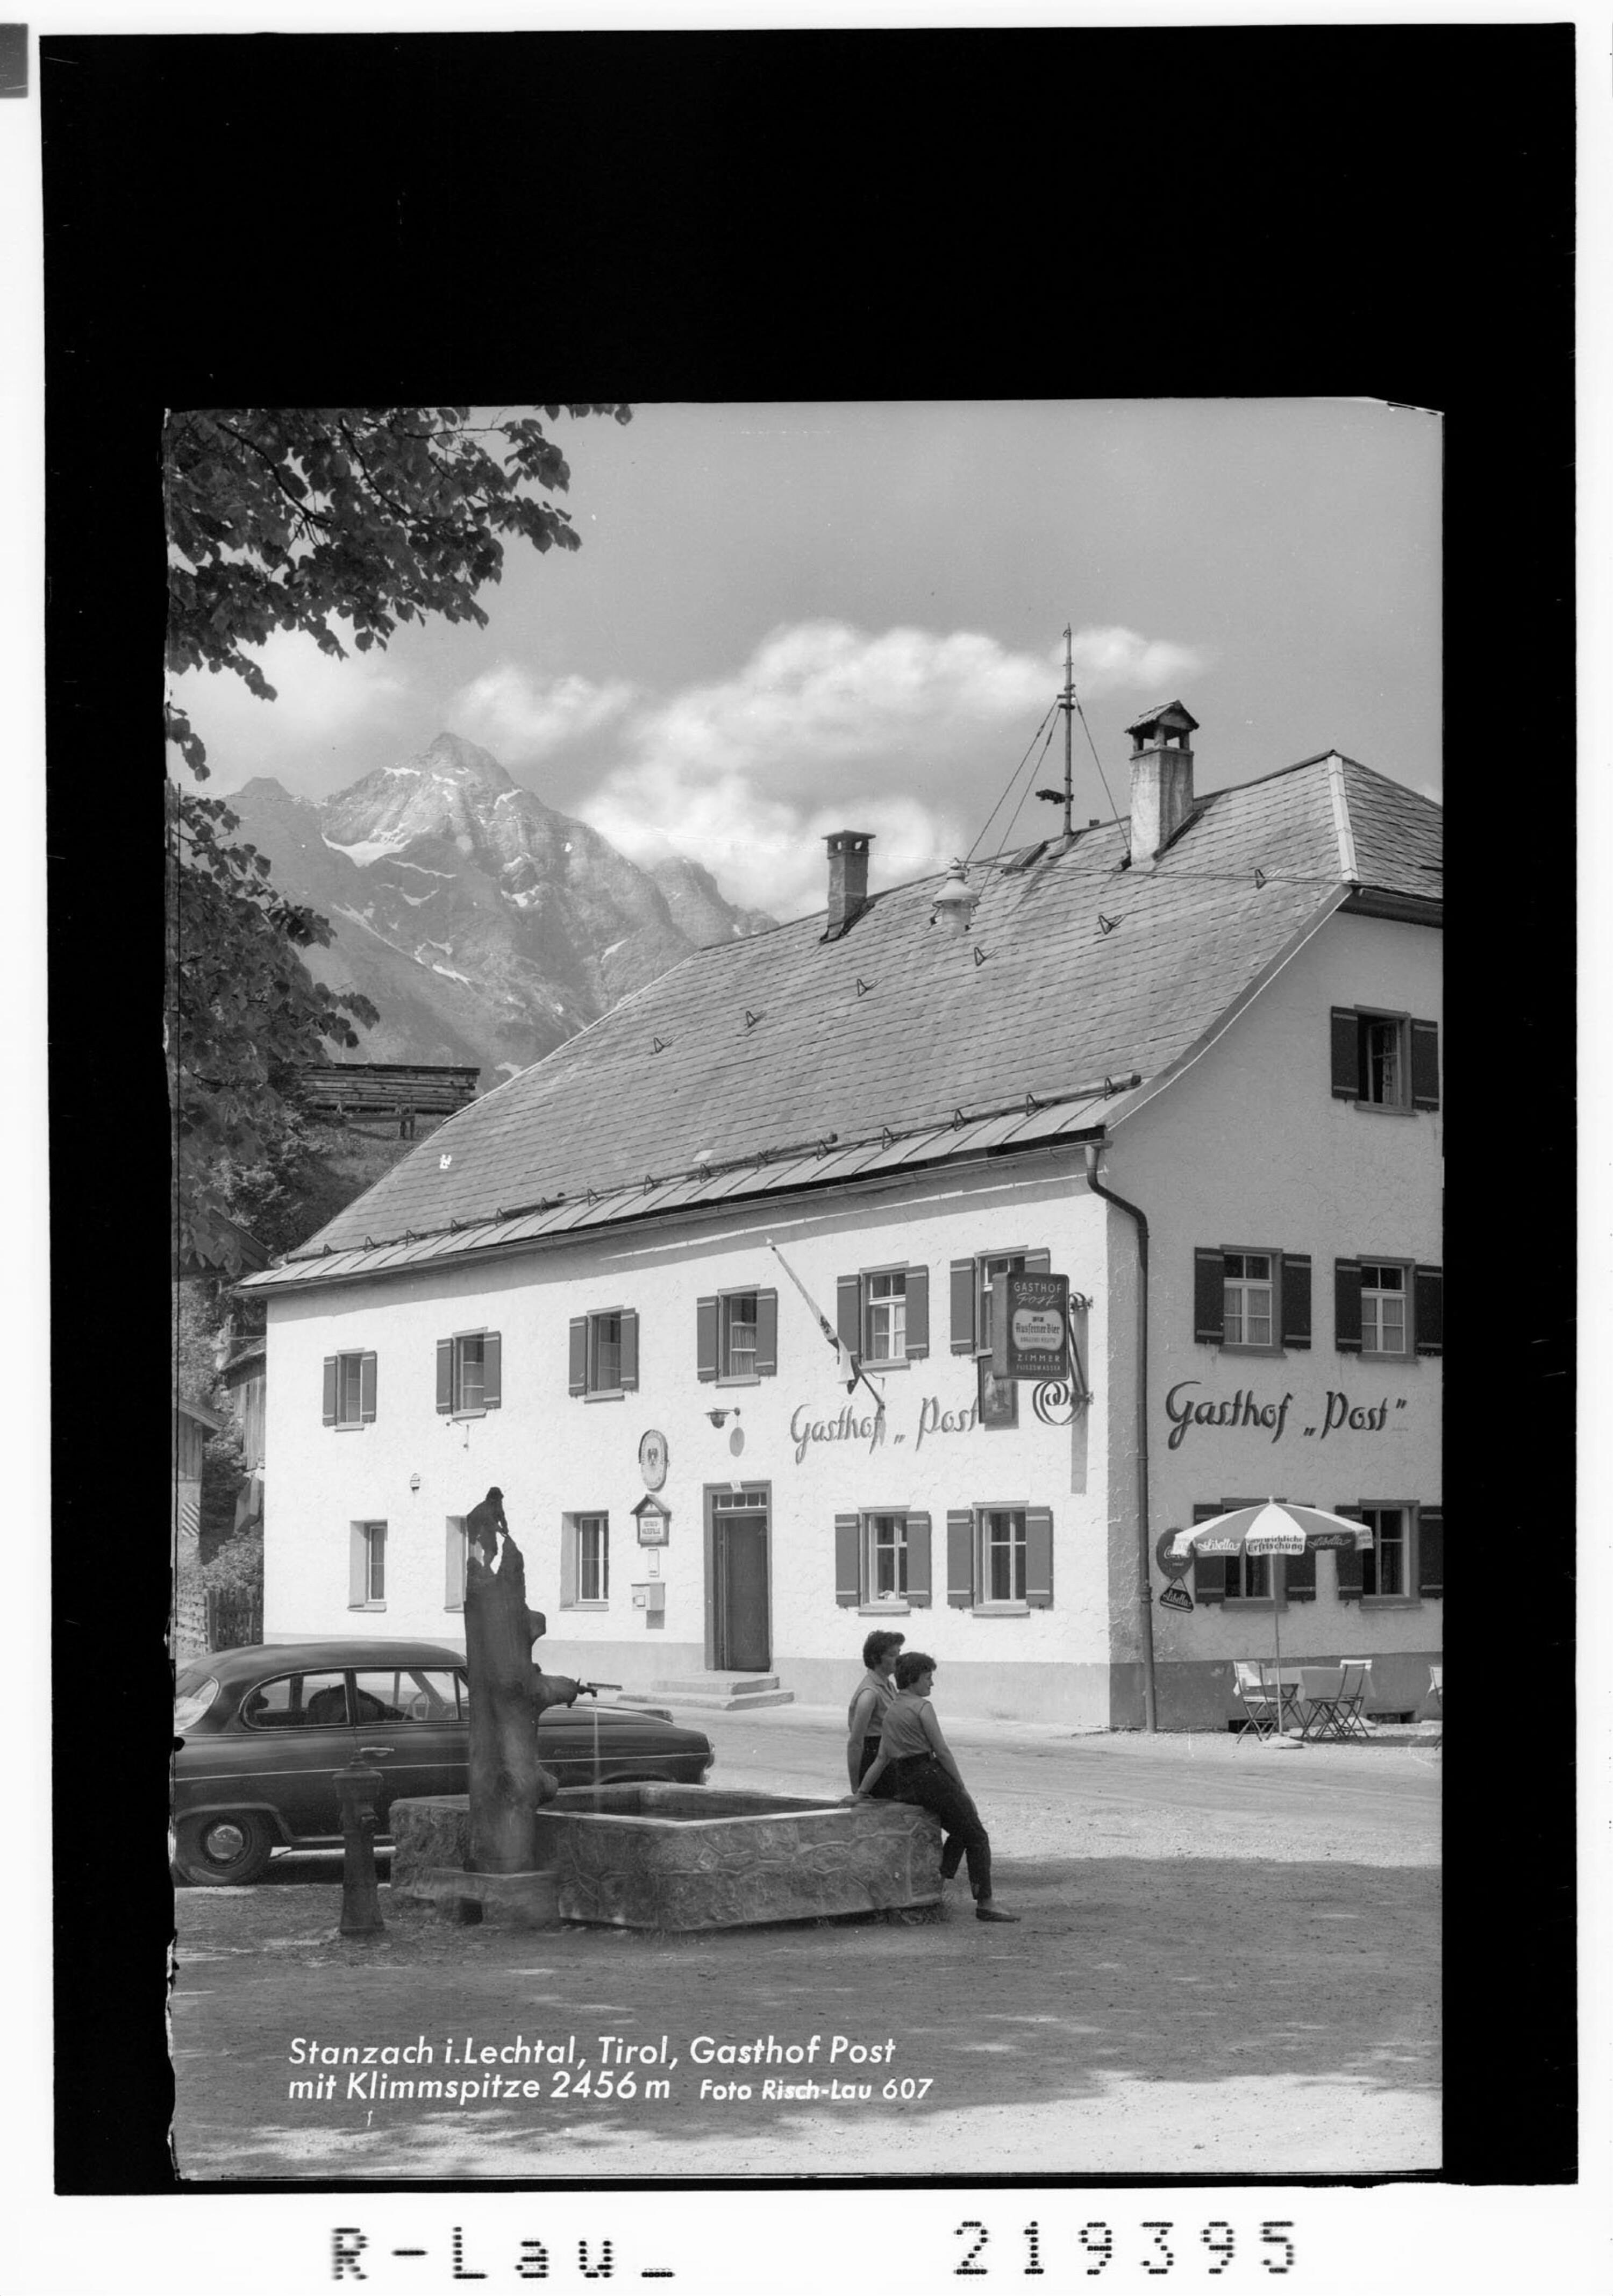 Stanzach im Lechtal / Tirol Gasthof Post mit Klimmspitze 2456 m></div>


    <hr>
    <div class=